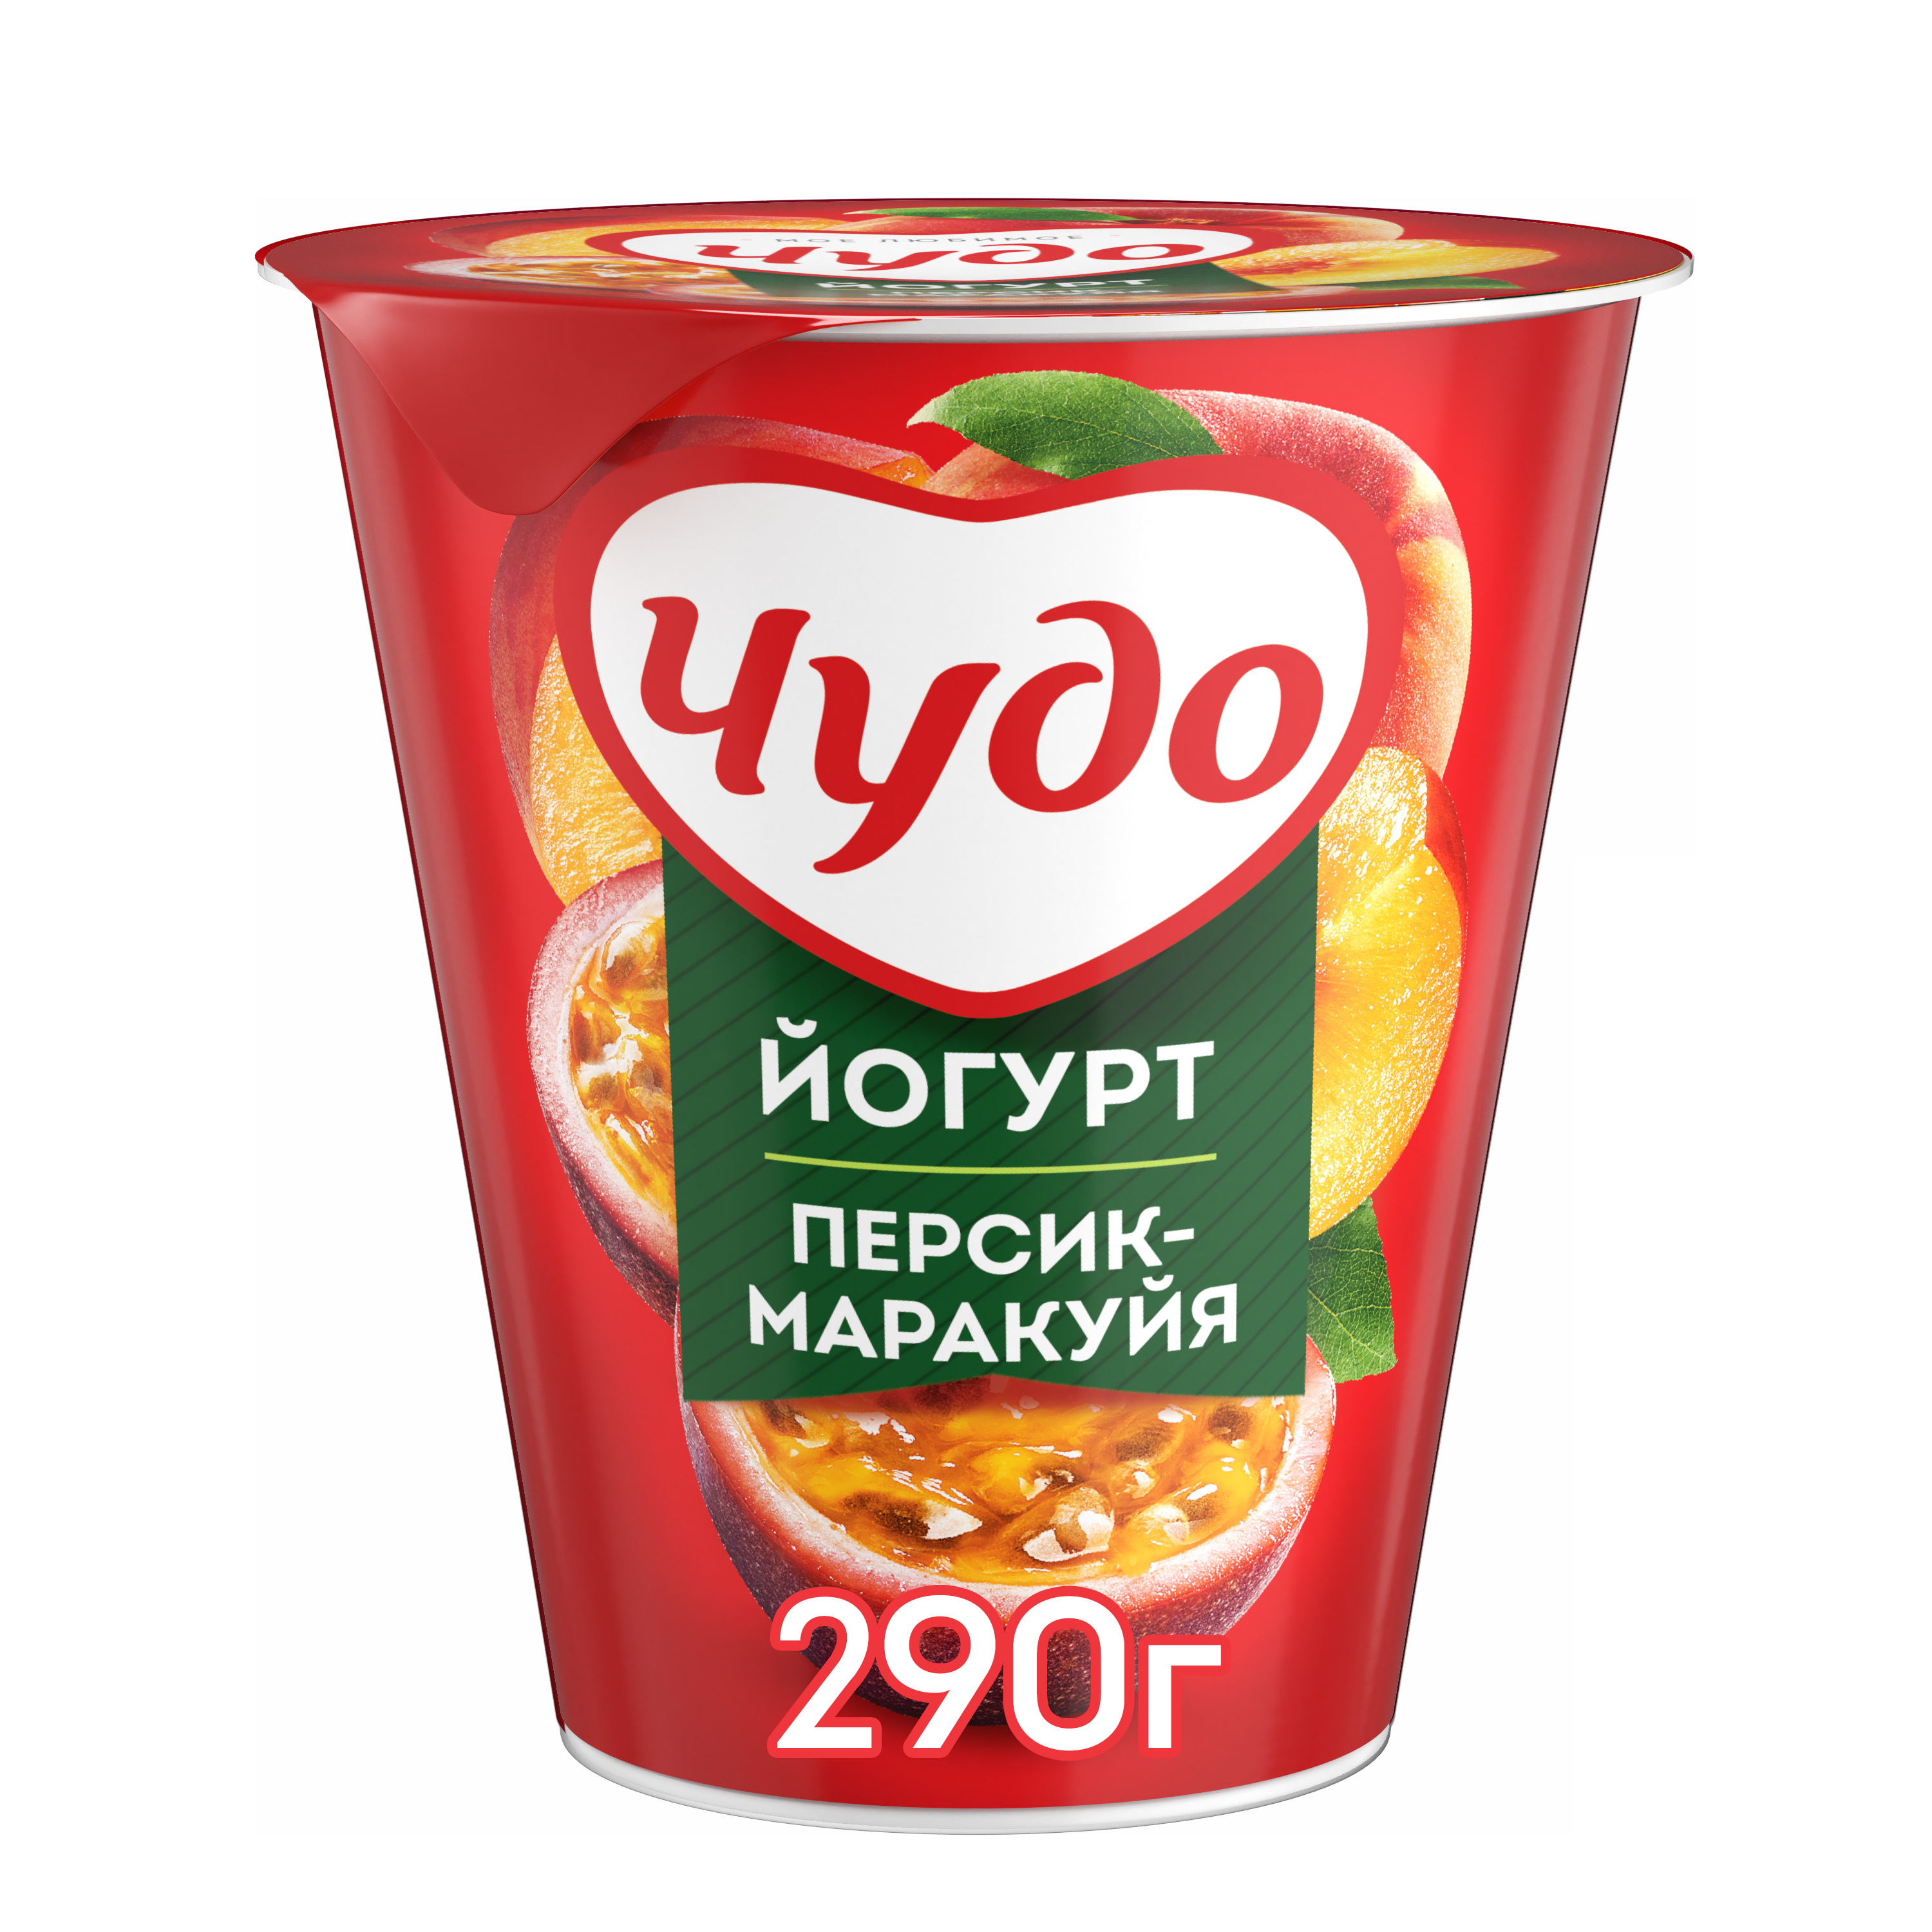 Йогурт Чудо персик-маракуйя 2% 290 г